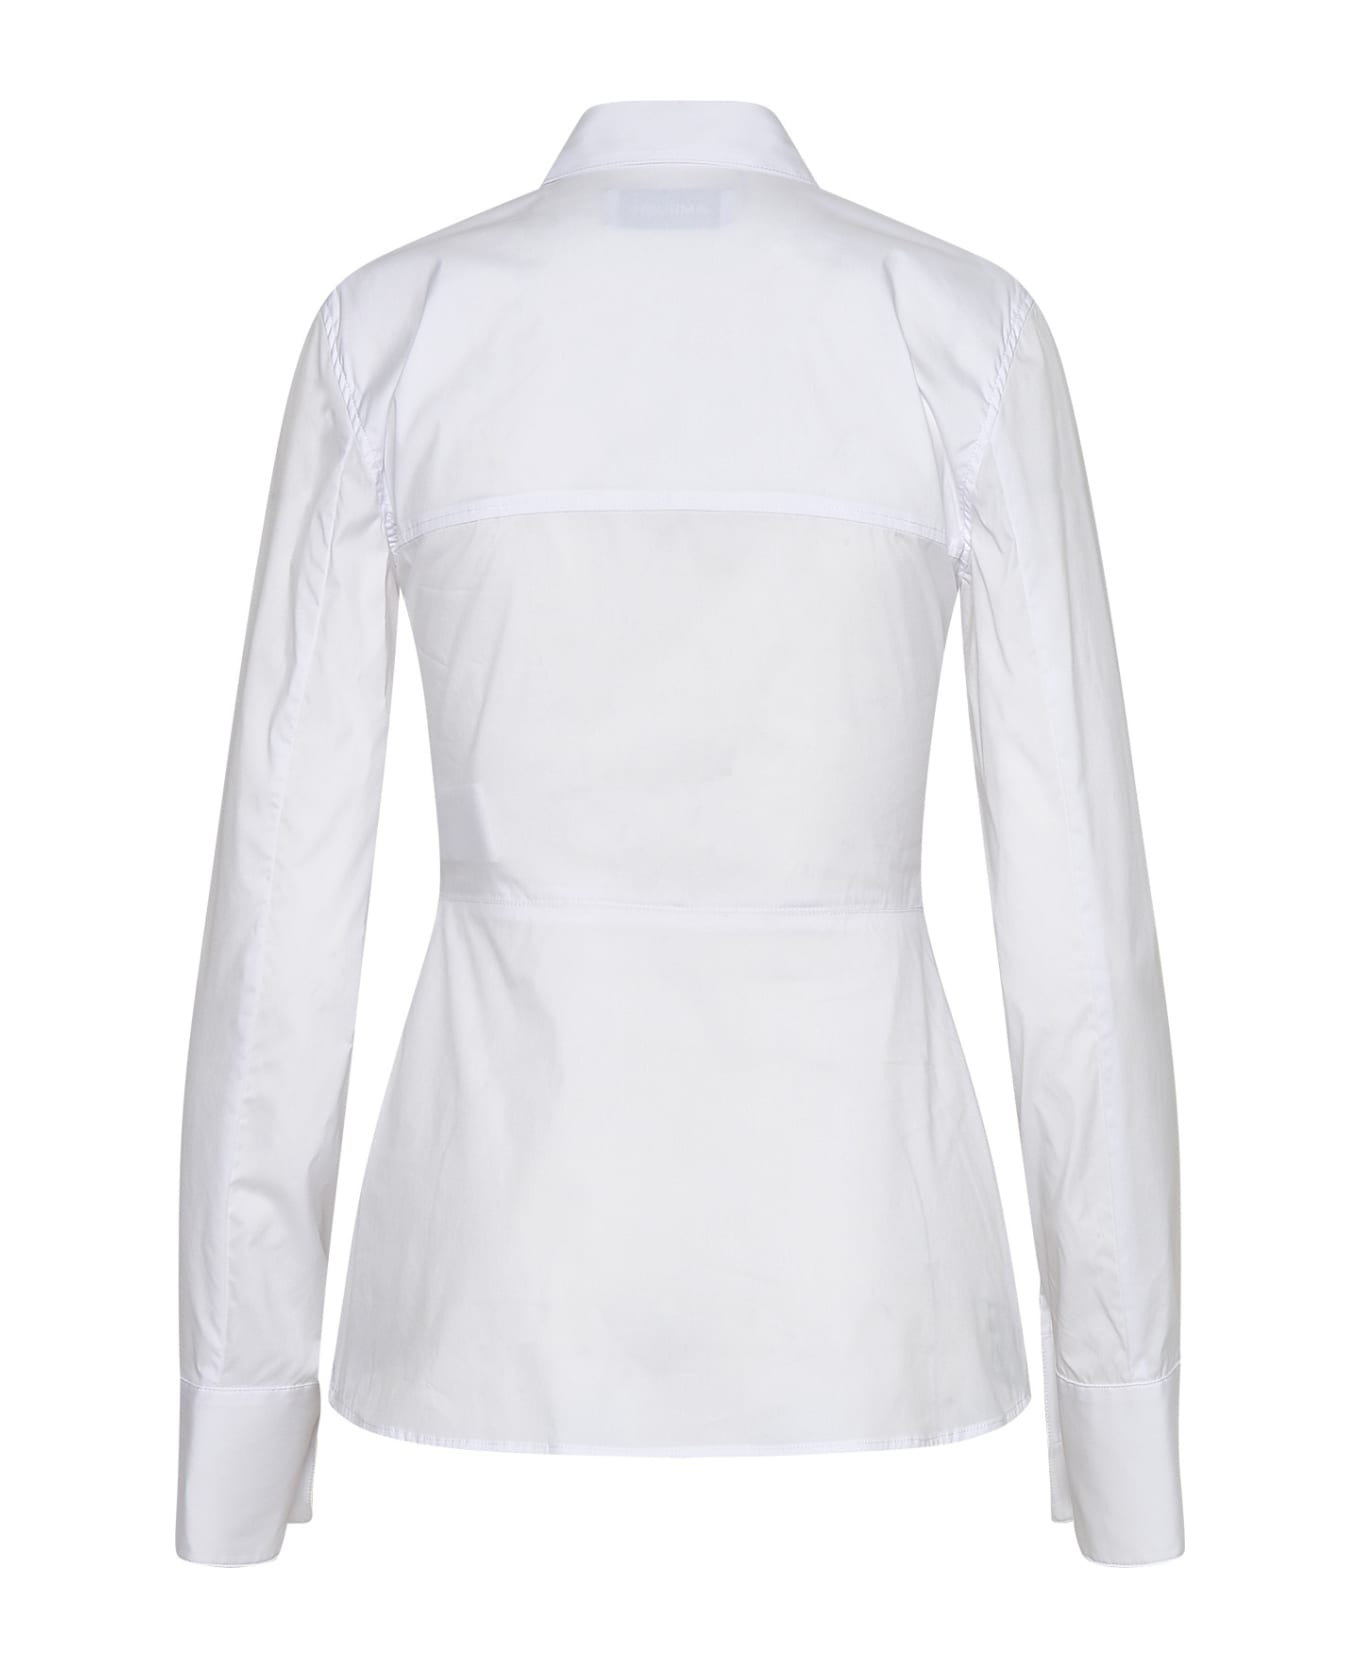 AMBUSH White Cotton Shirt - White